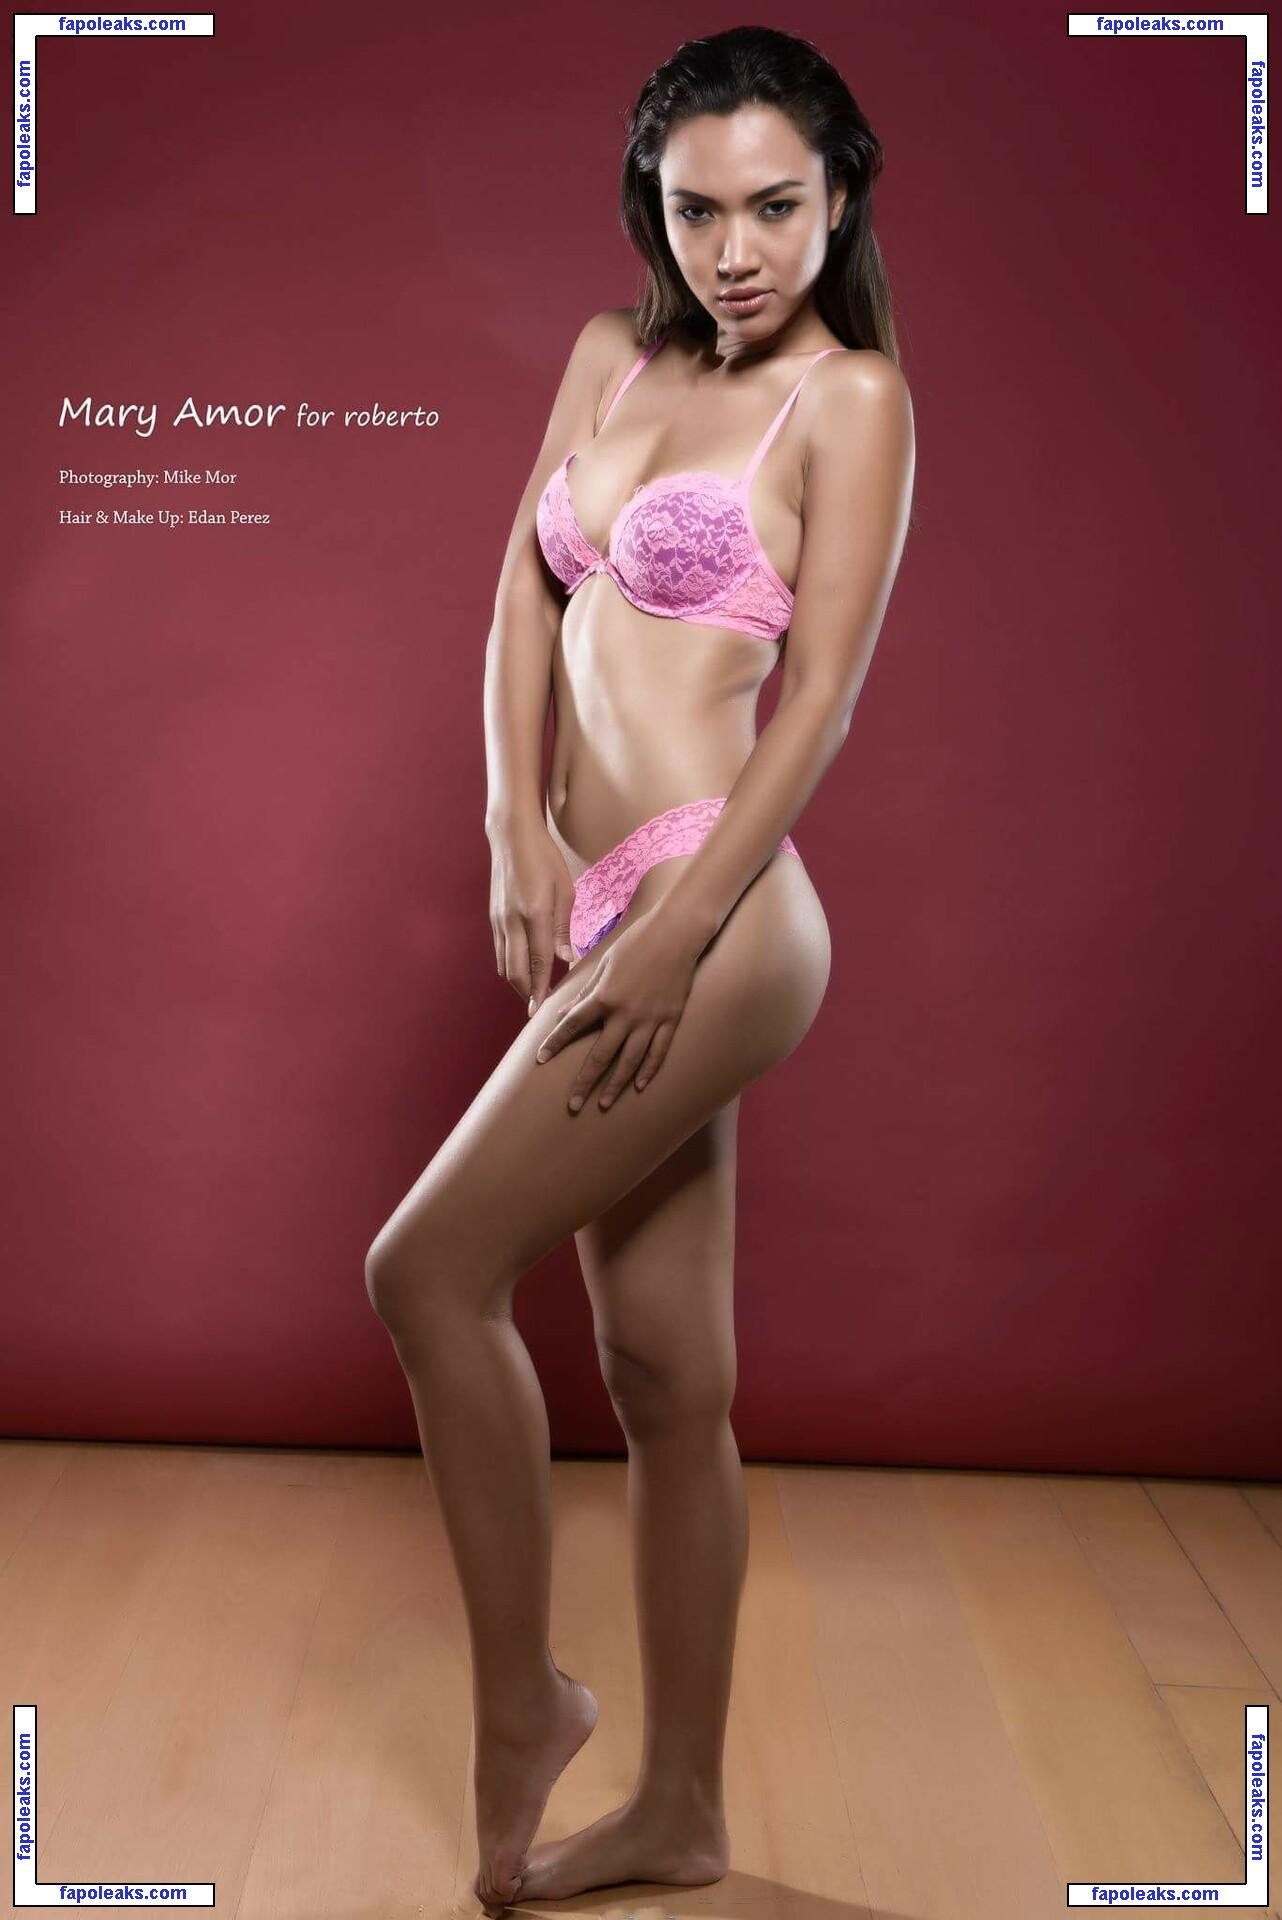 Mary-amor / maryamorbenari / maryoviedo069 nude photo #0007 from OnlyFans